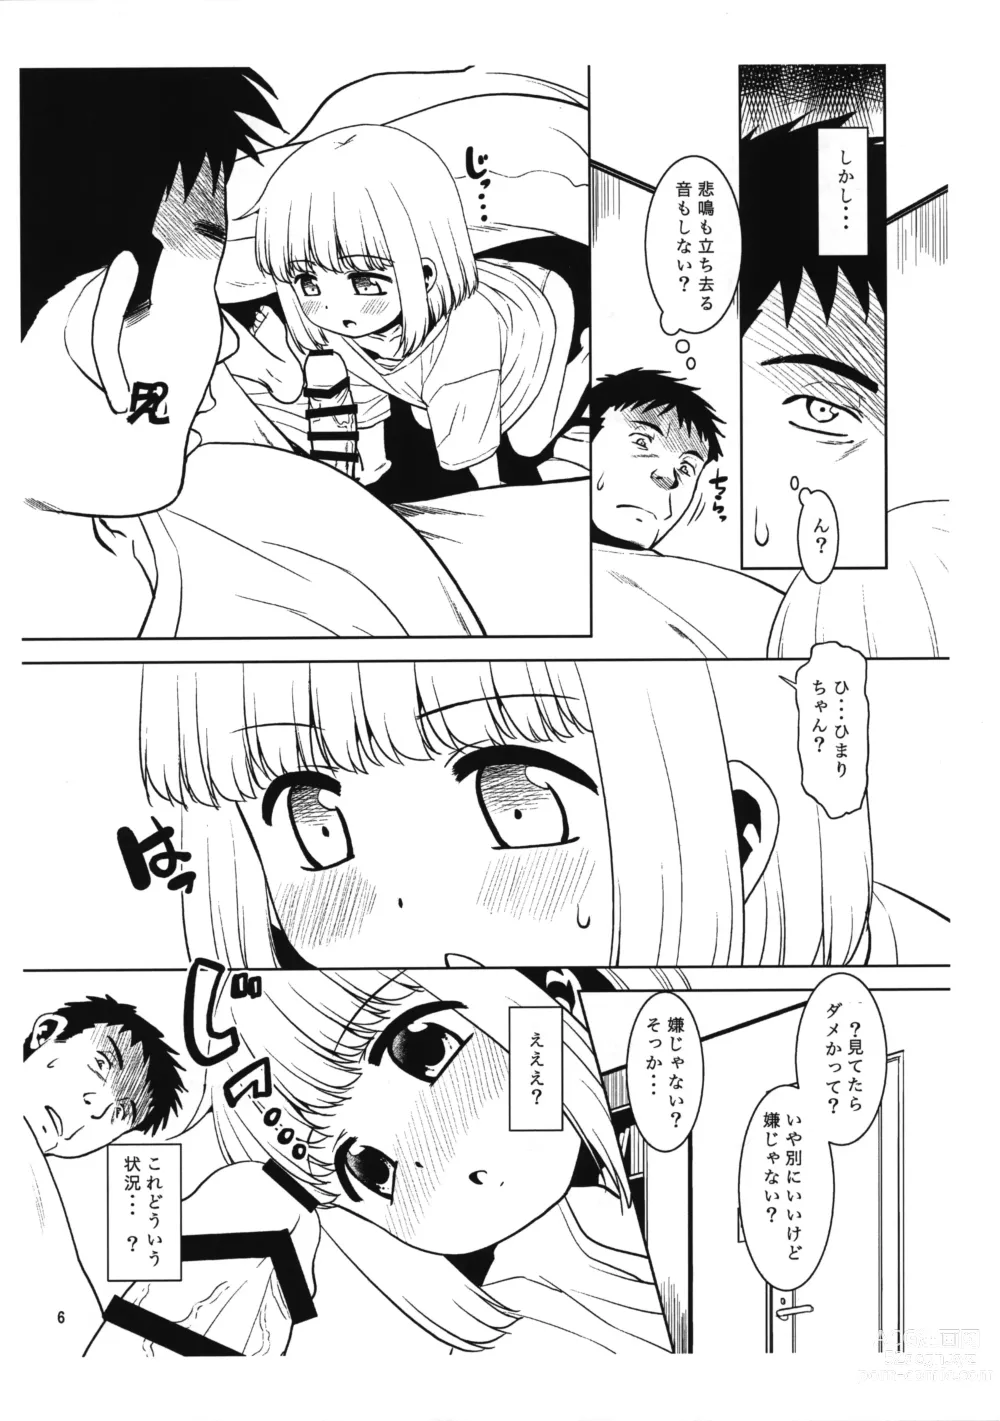 Page 5 of doujinshi Meikko ni Asadachi o Mirareta node Eroi koto o Oshietemita. Preview-ban